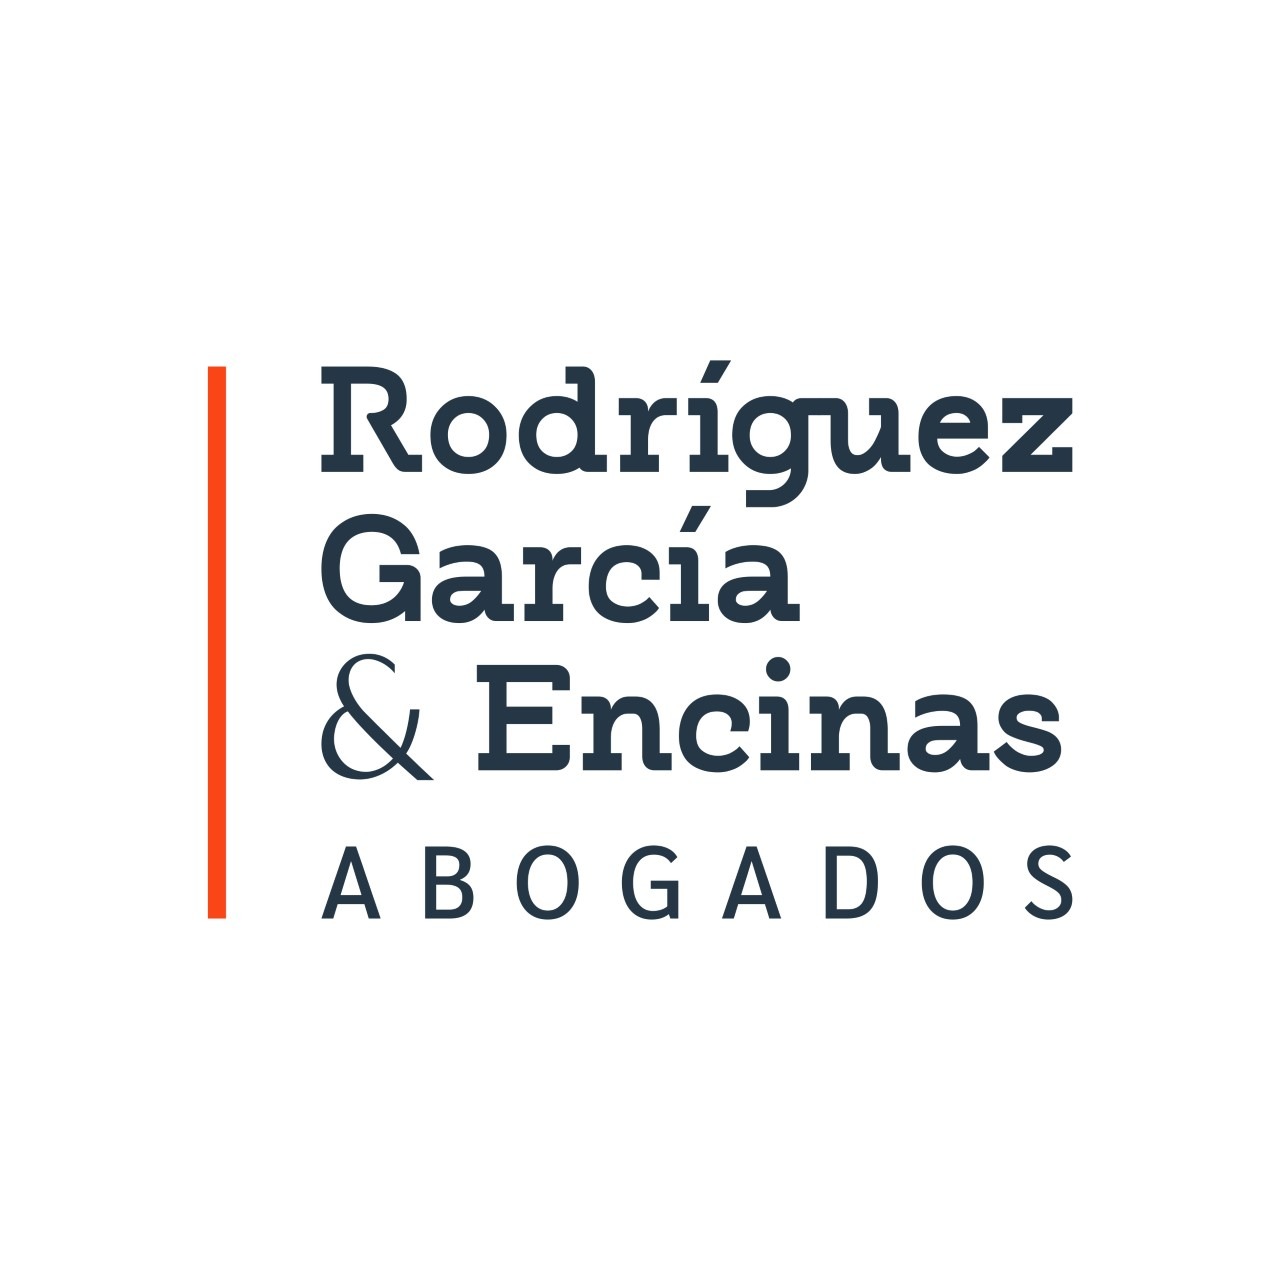 Rodriguez Garcia & Encinas Abogados